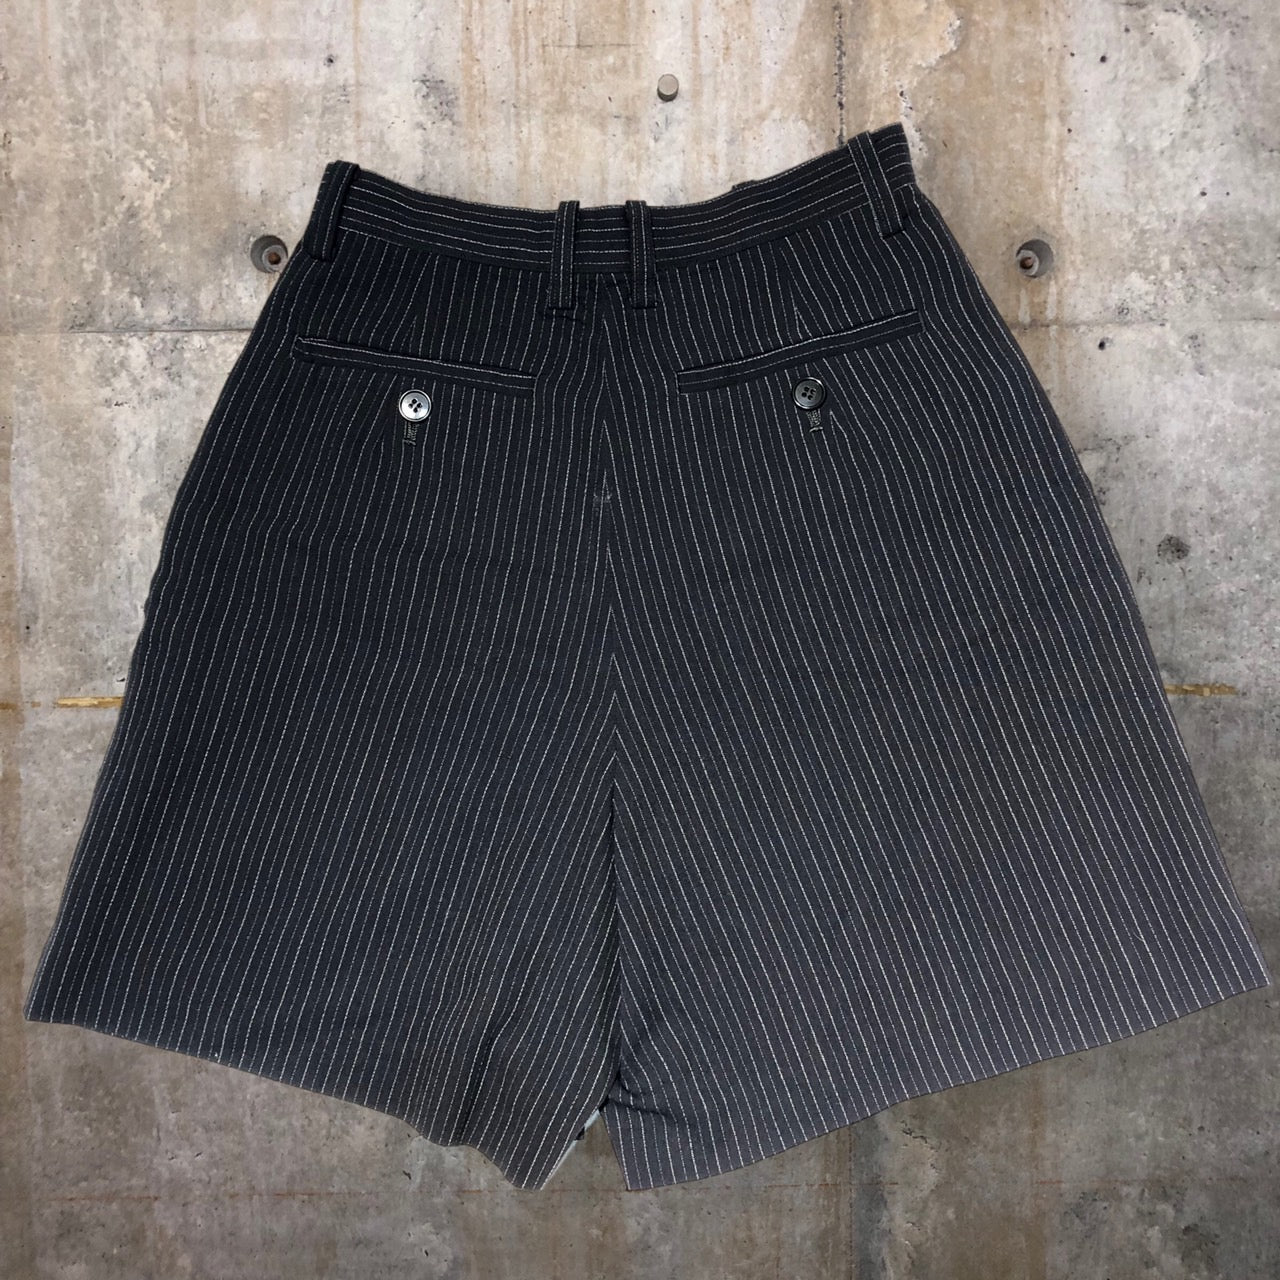 i.s. ISSEY MIYAKE(アイエス イッセイミヤケ) 90's 1tac stripe half pants/ストライプハーフパンツ IS41-FF041 M ブラック